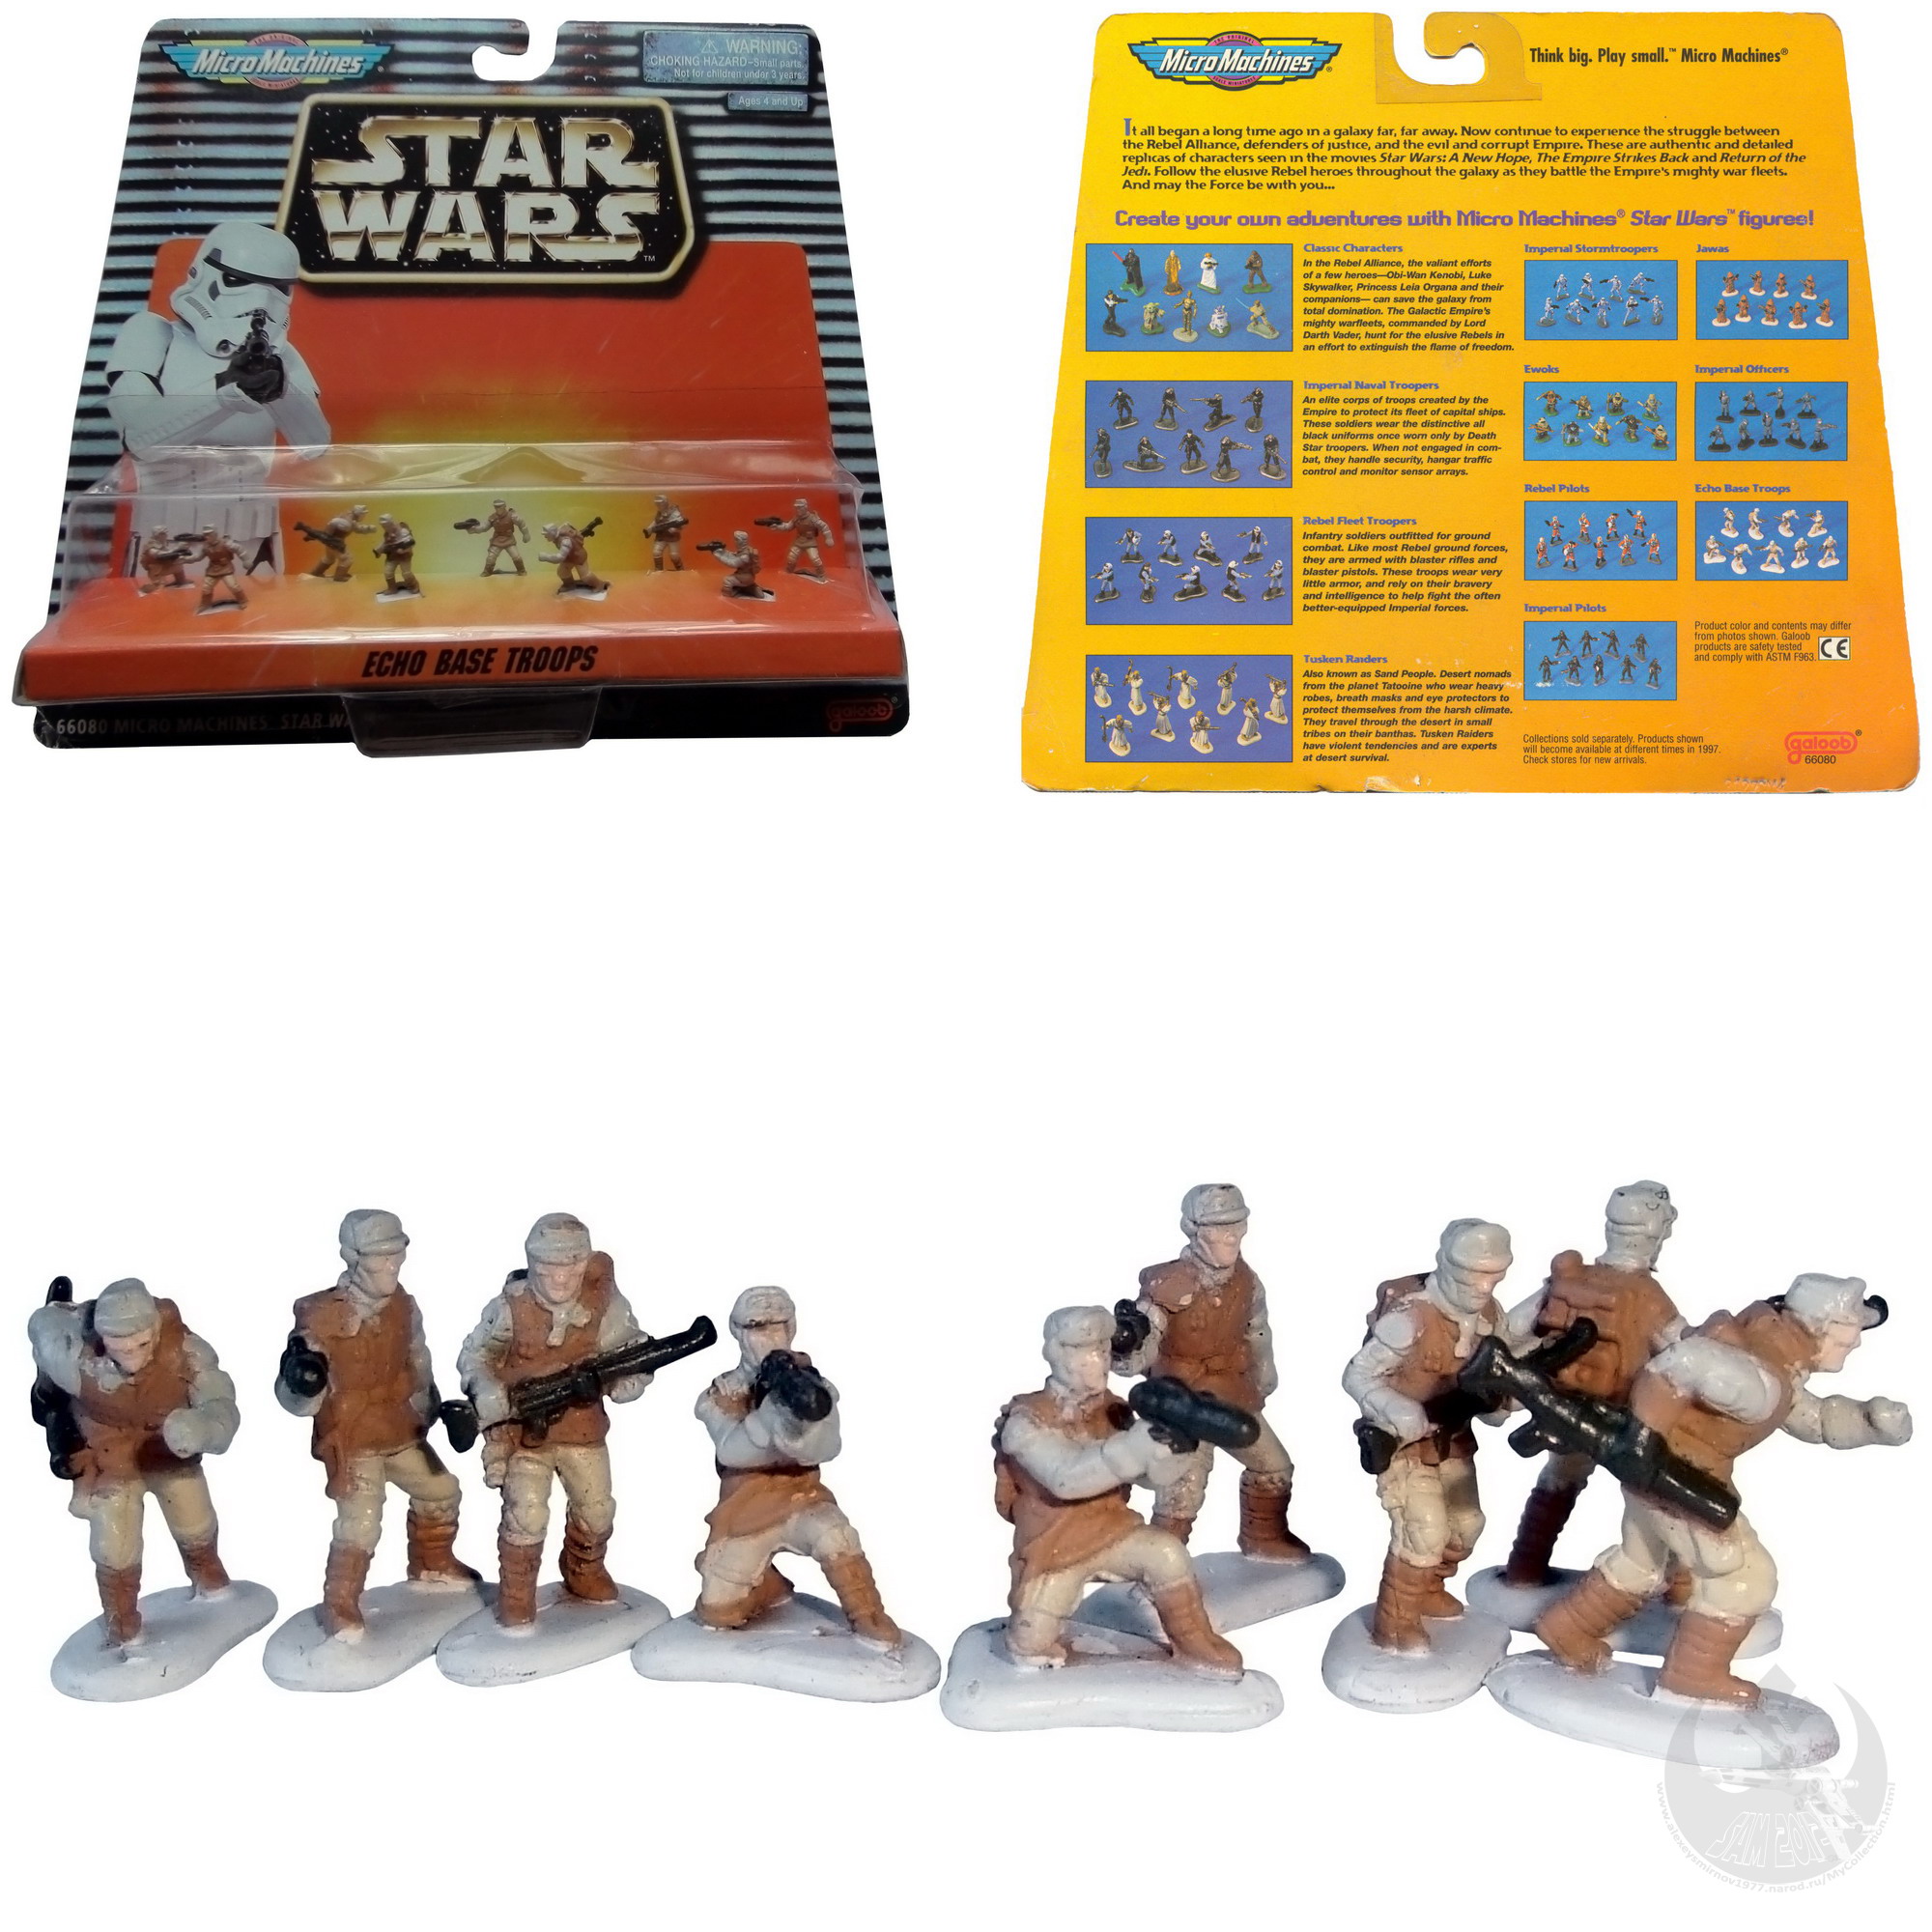 Galoob 1995 Star Wars MICROMACHINES Rebel Echo Base Troopers lose komplett 